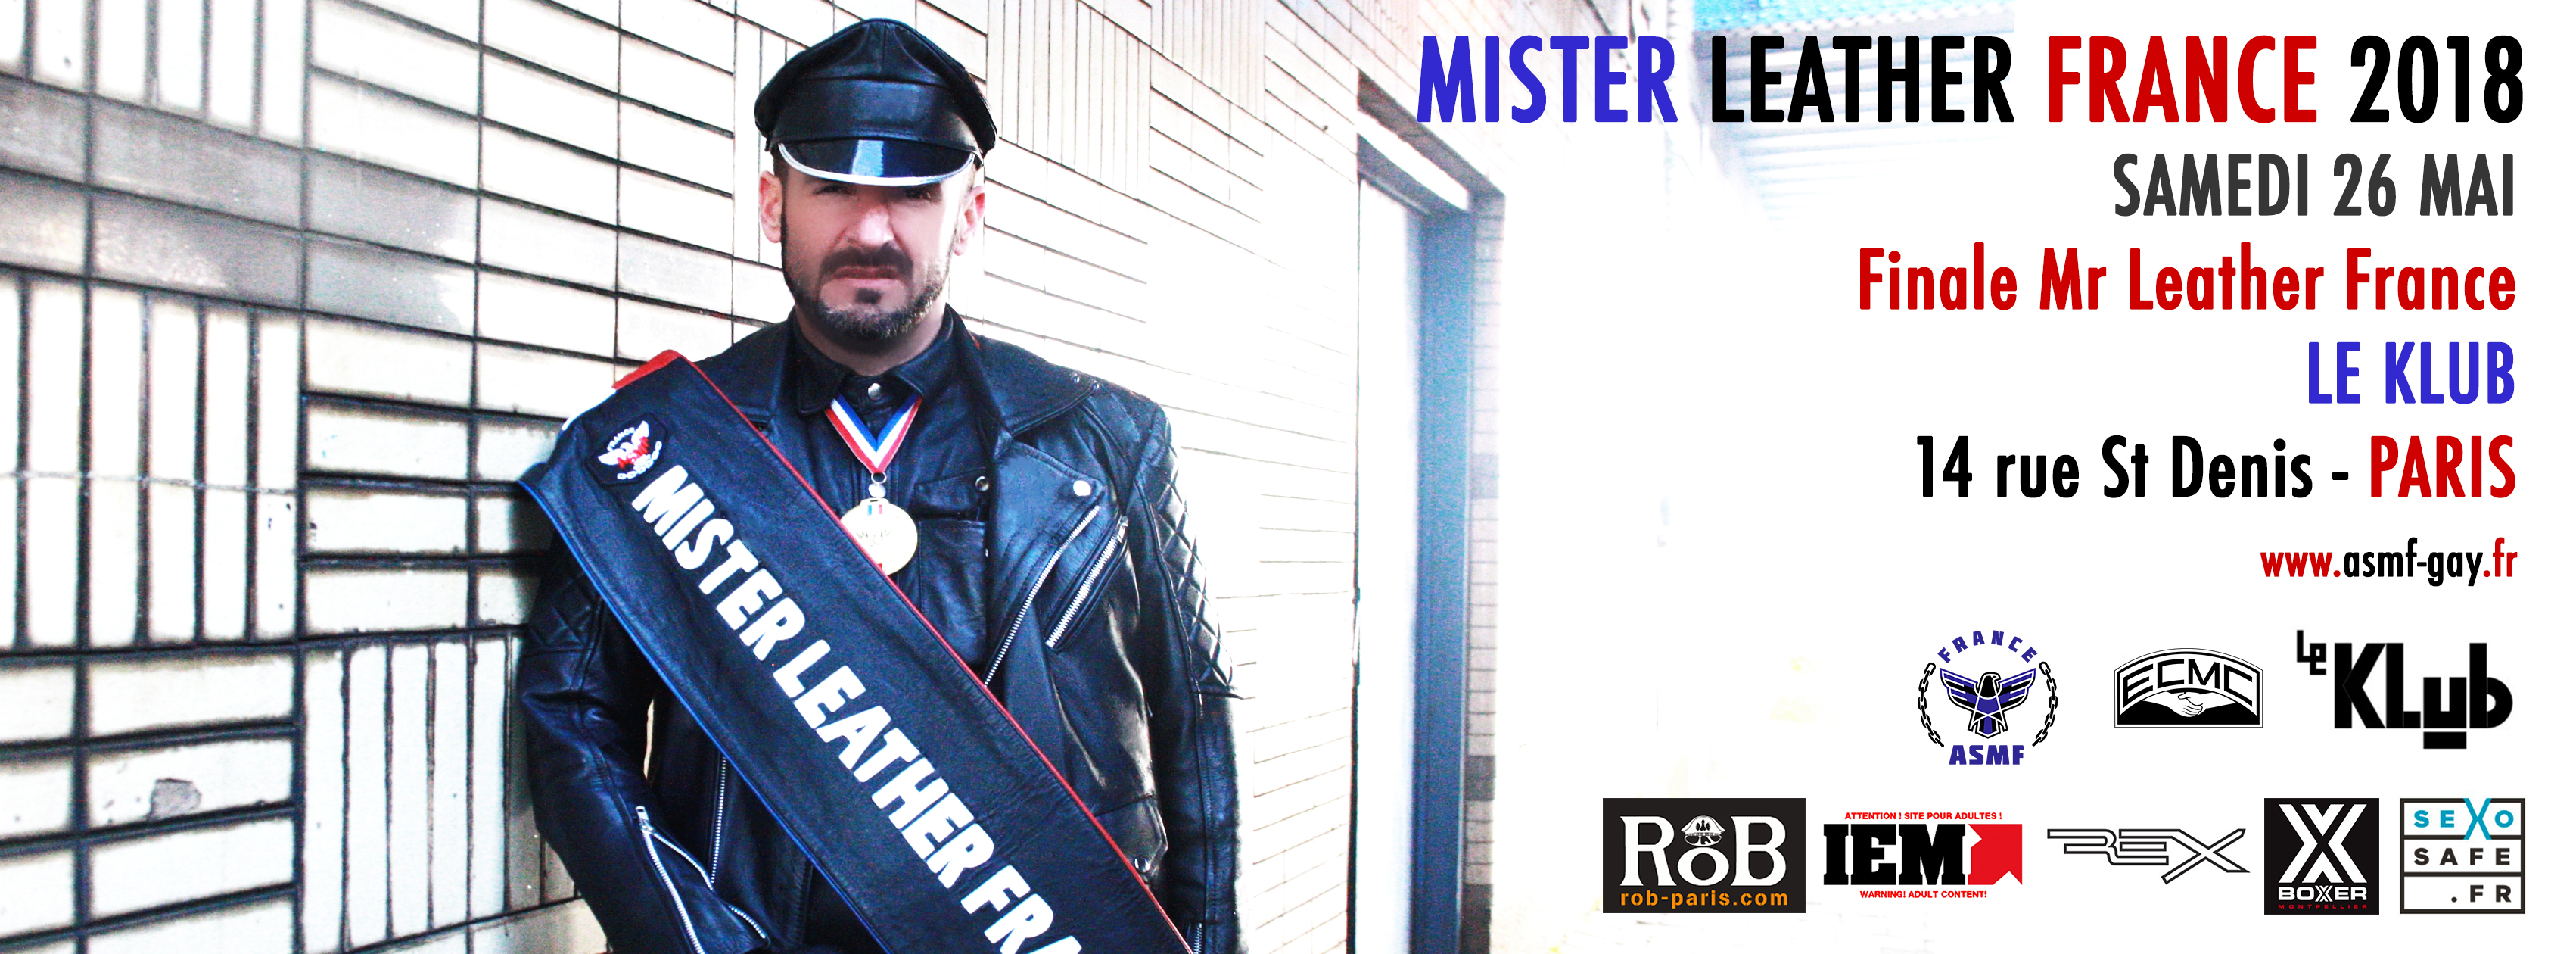 Mister Leather France 2018